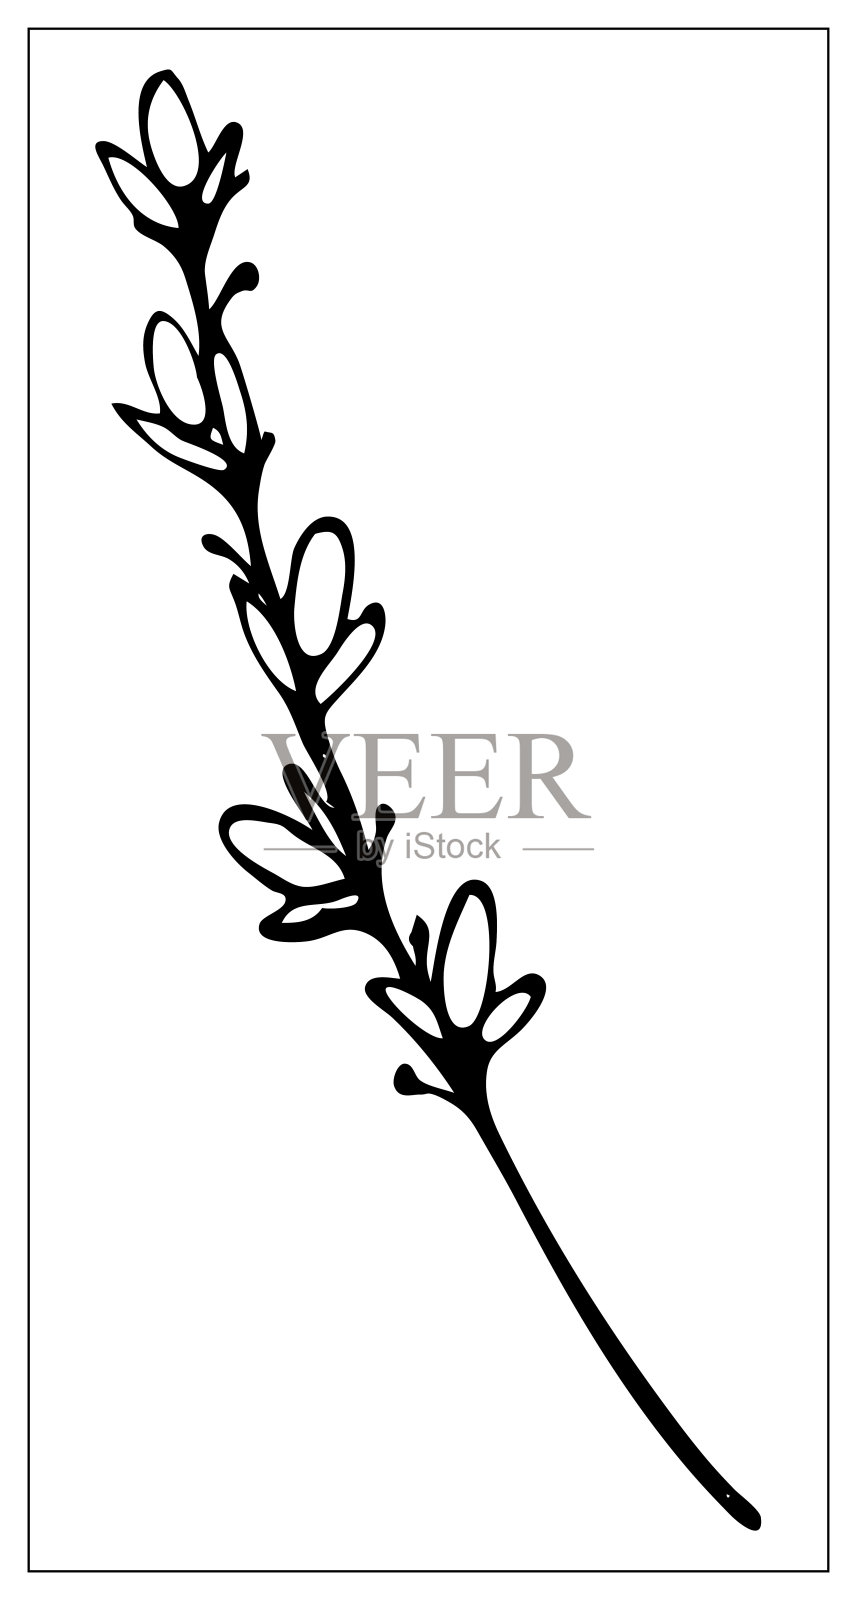 一片草叶的黑白剪影。在白色背景上单独绘制的草药。轮廓元素的设计在花卉风格。向量股票插图设计元素图片